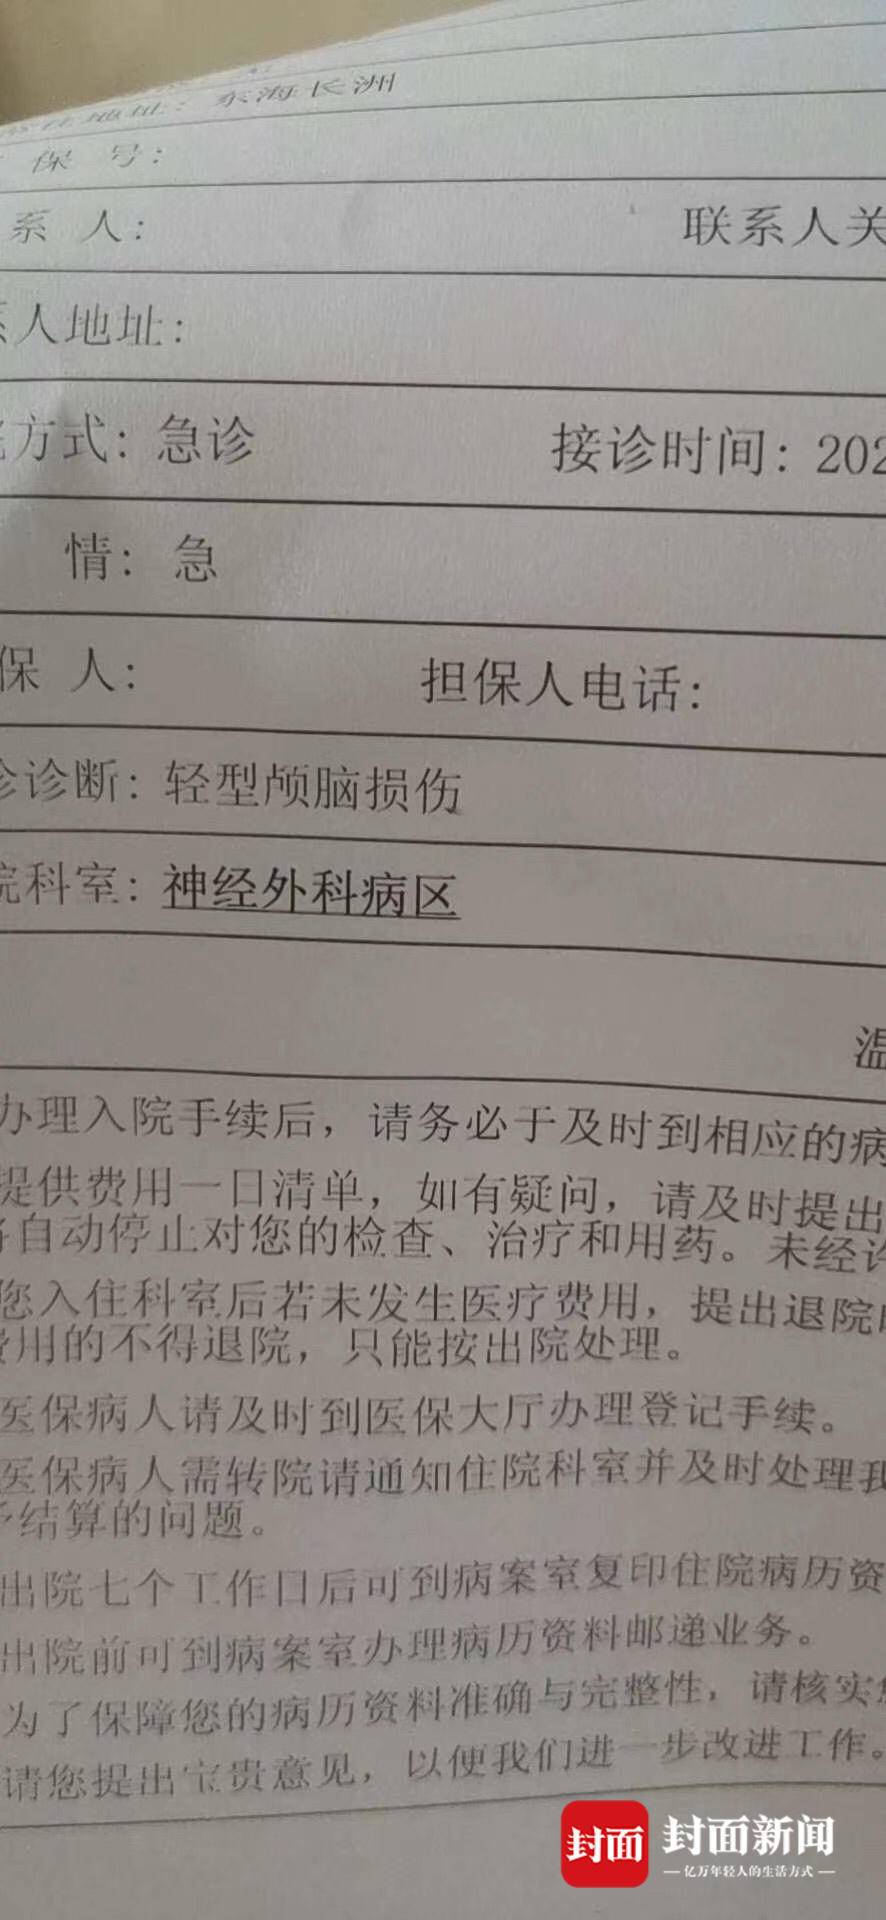 重庆城管追打女商贩反被砍伤：当事商贩称“家庭因此面临崩溃”，同意社区调解